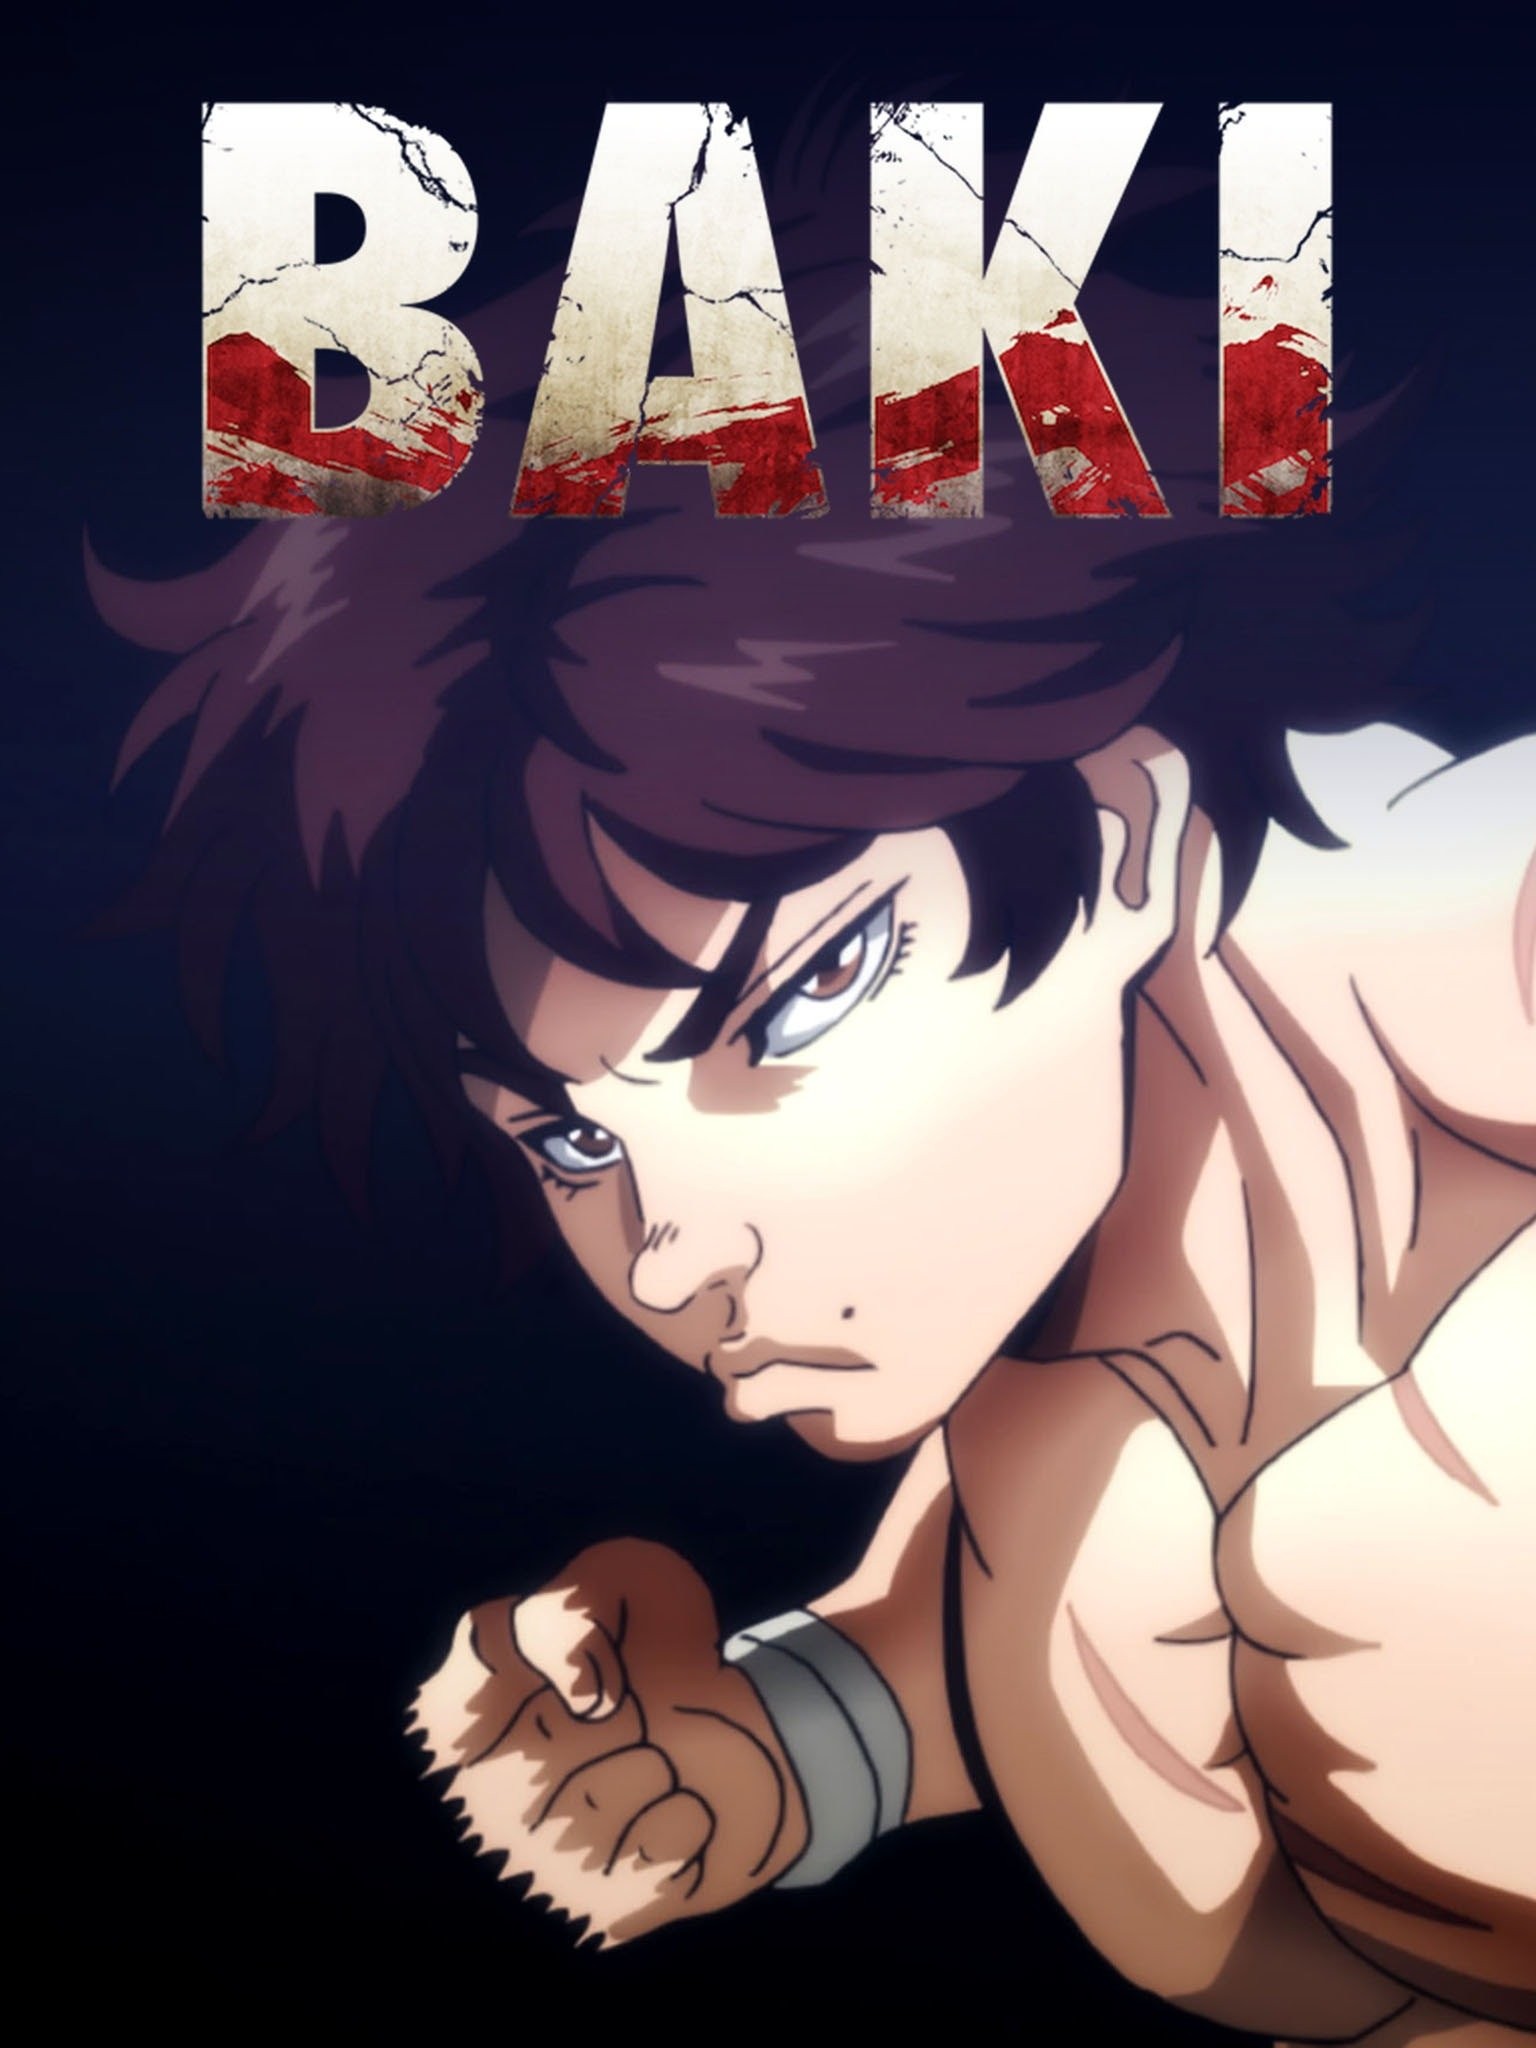 Baki - O Campeão, Trailer [HD]